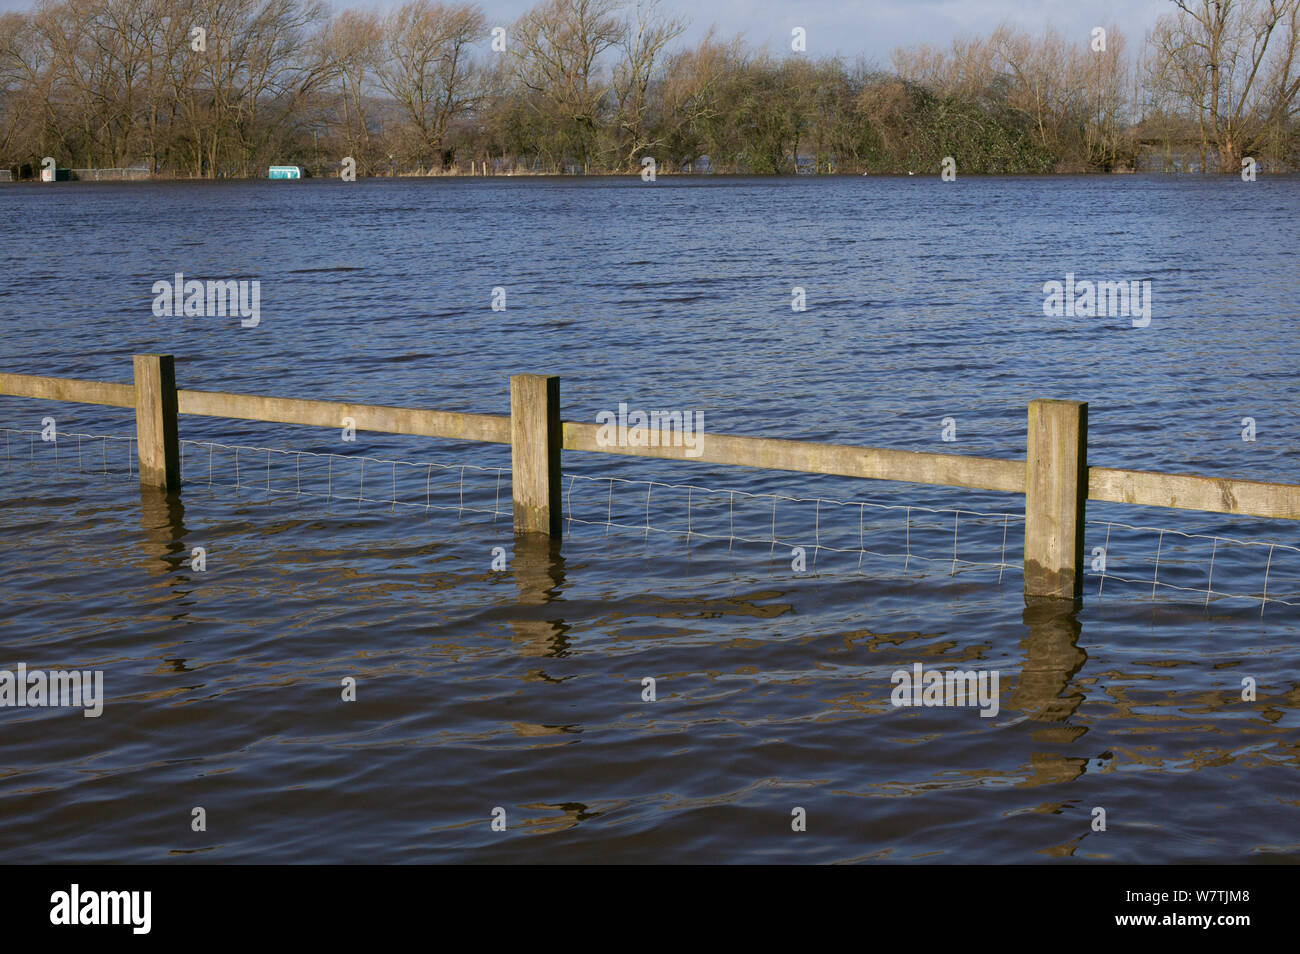 Camping site inondées pendant les inondations de février 2014 fleuve Severn, Upton sur Severn, Worcestershire, Angleterre, Royaume-Uni, le 8 février 2014. Banque D'Images